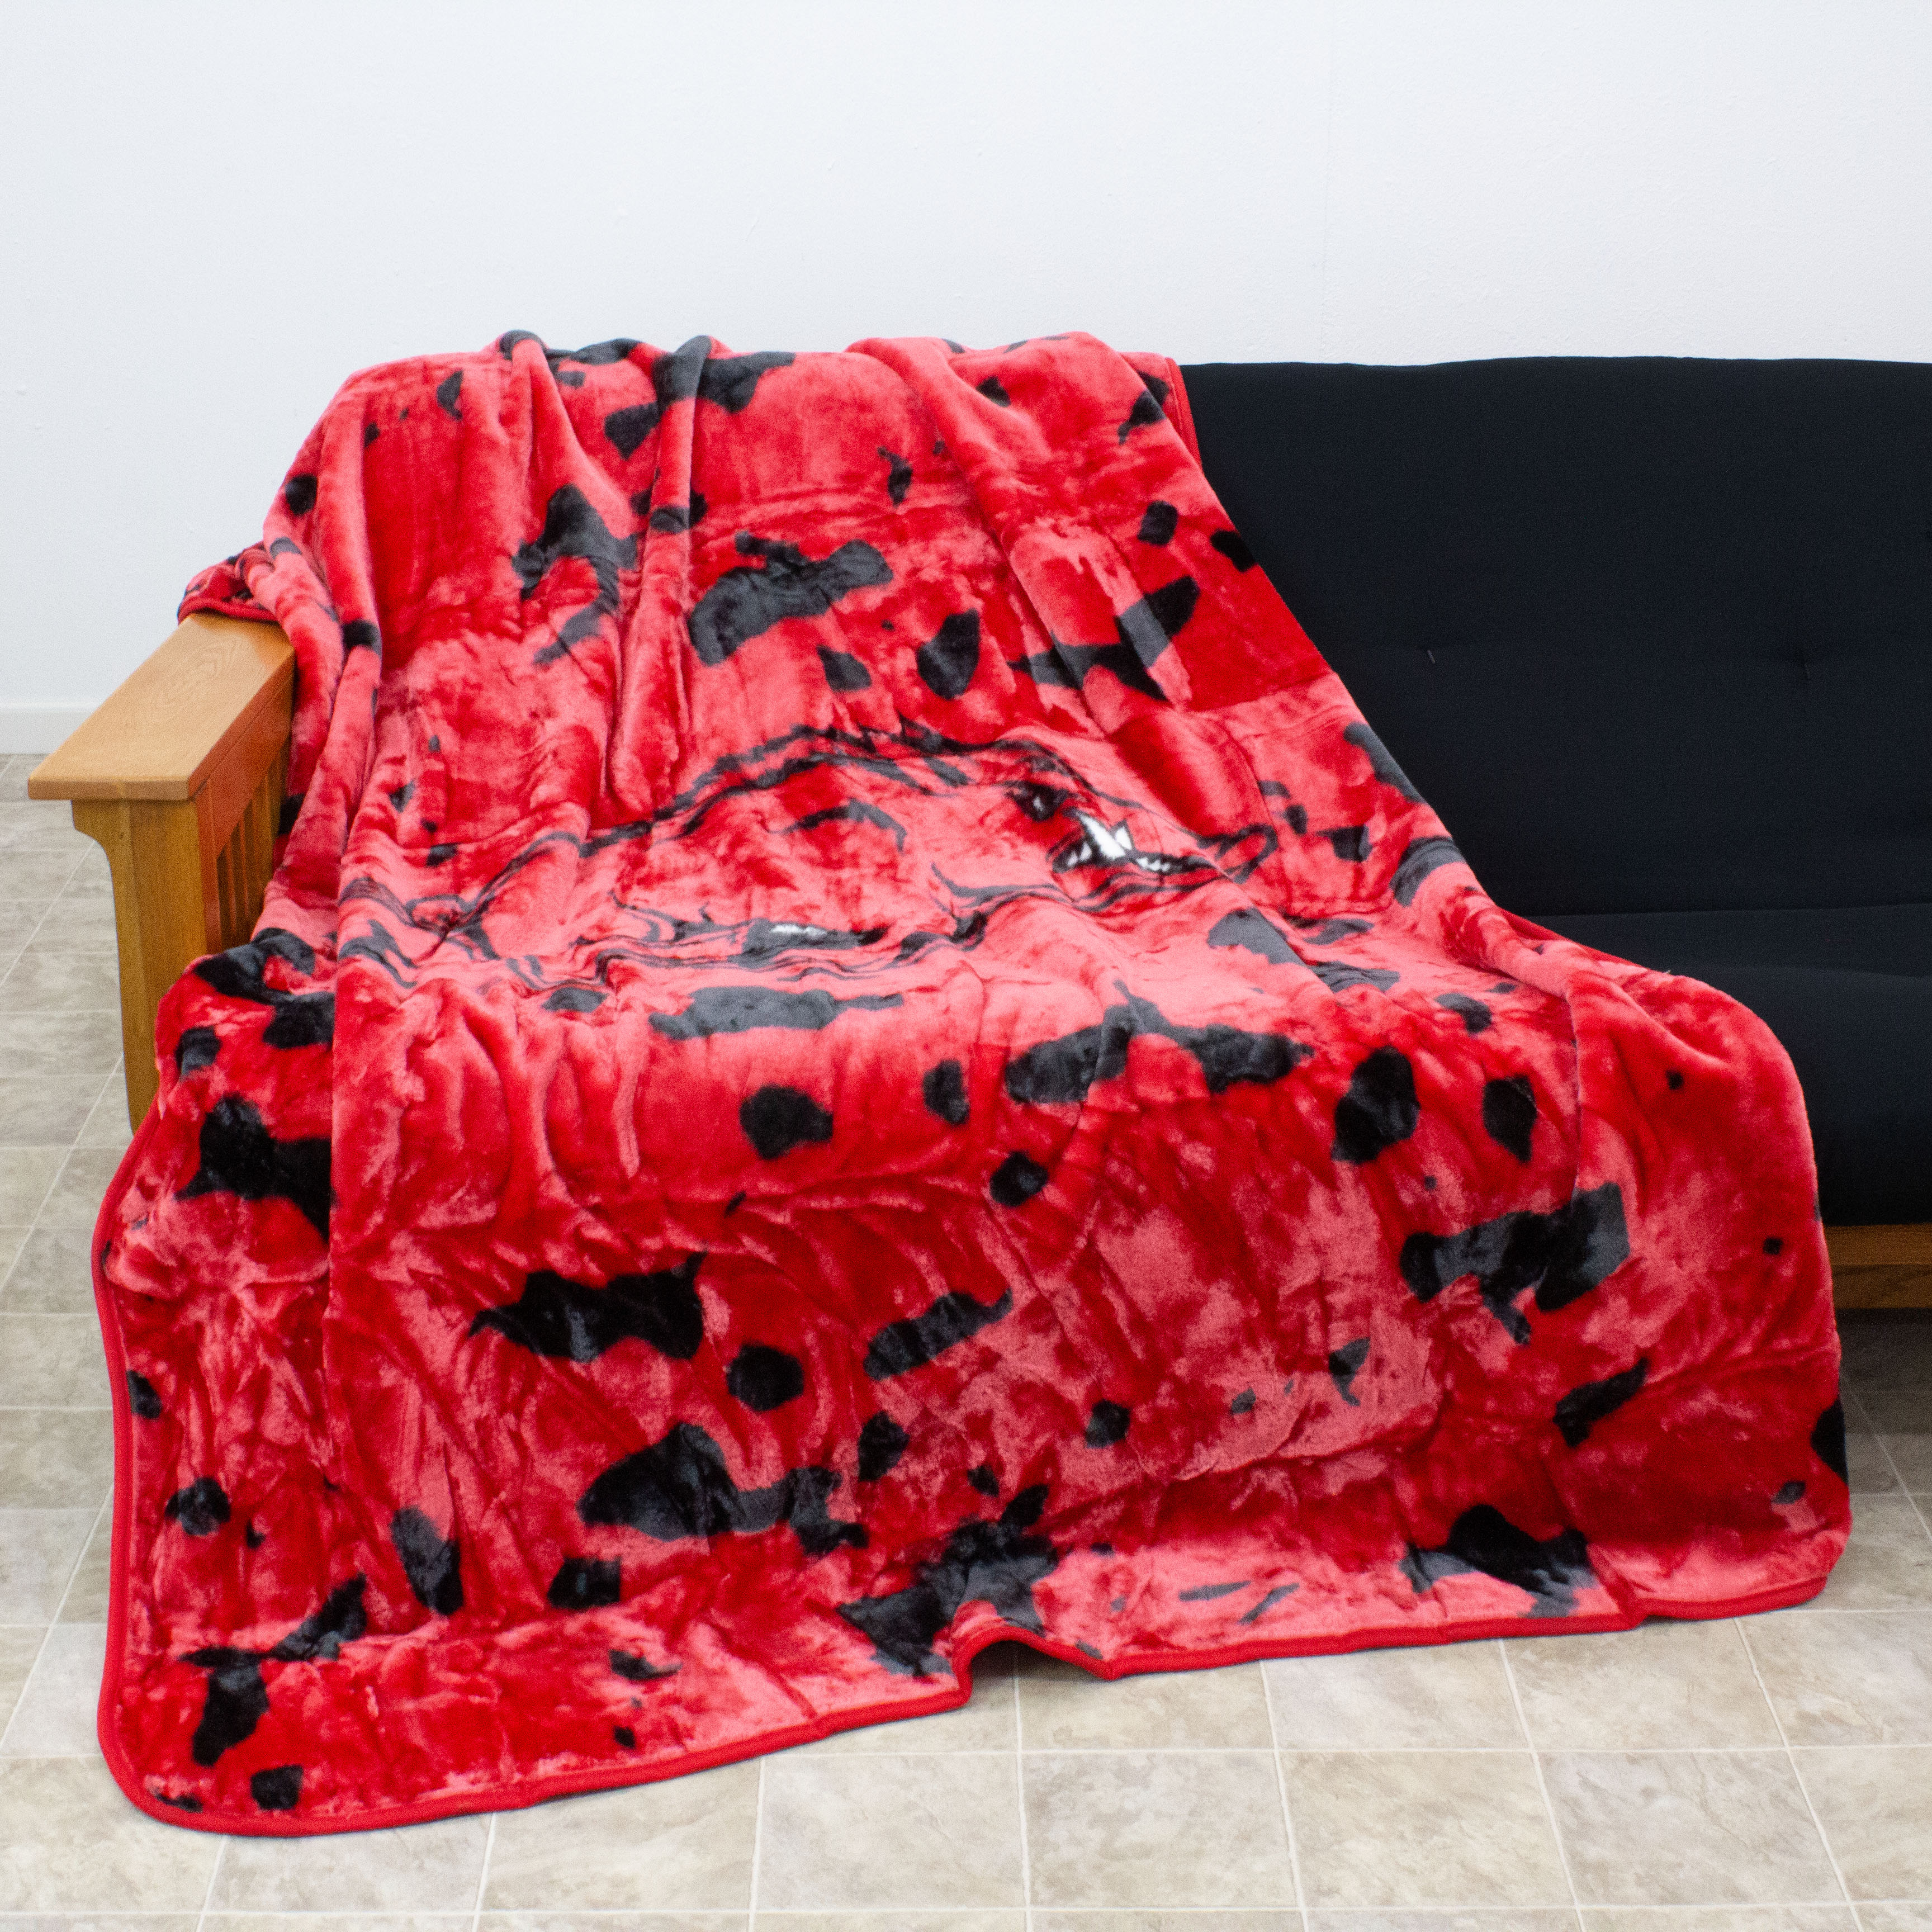 College Covers Arkansas Razorbacks Huge Raschel Throw Blanket, Bedspread, 86" x 63" - image 4 of 8